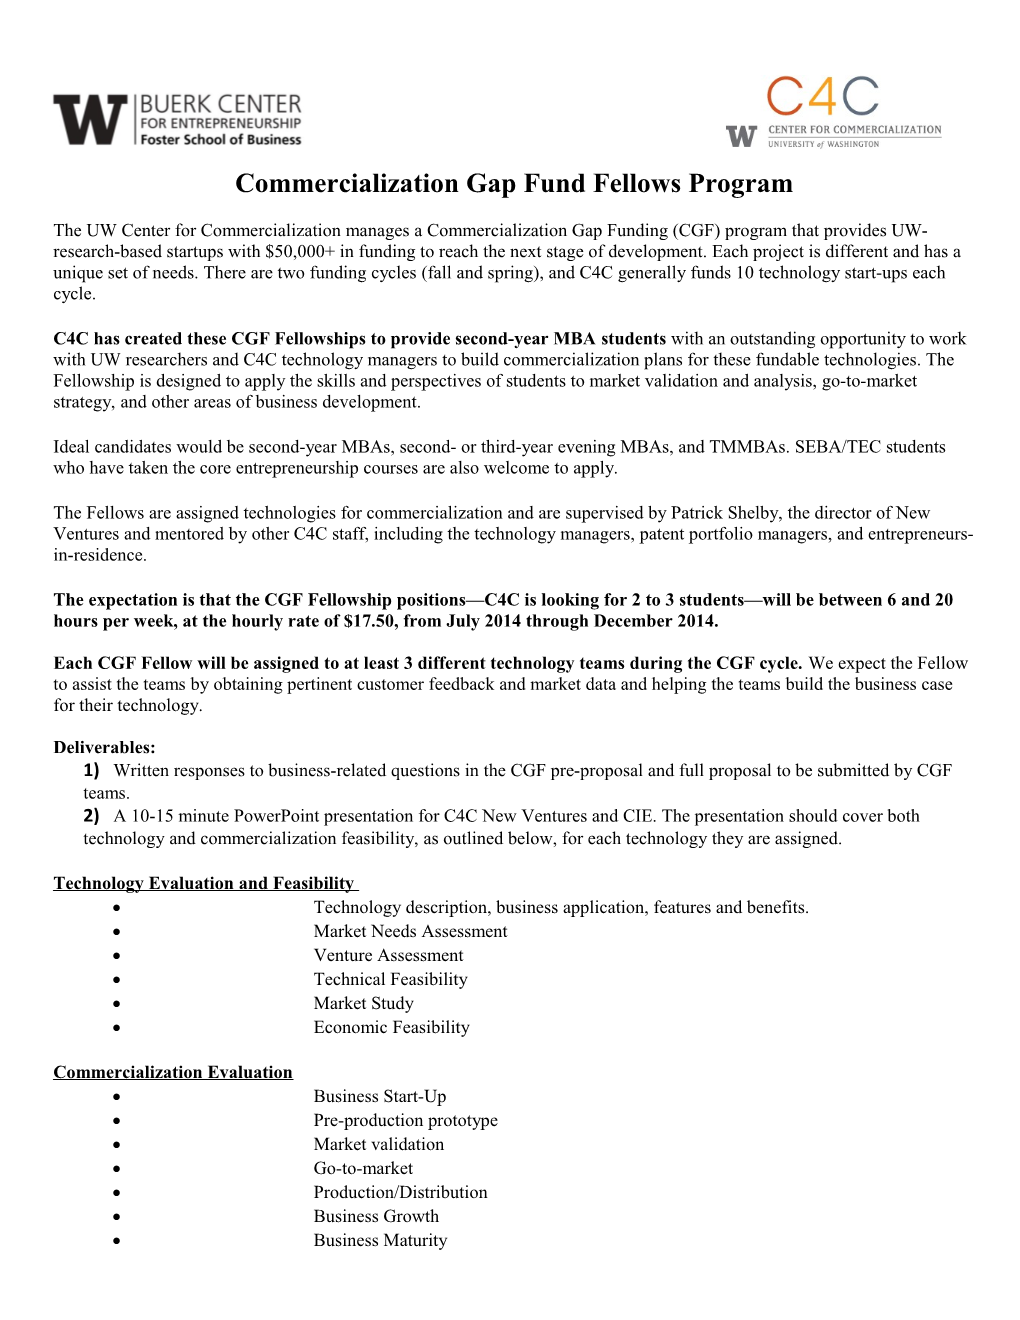 CGF Fellows Program Description FALL2014